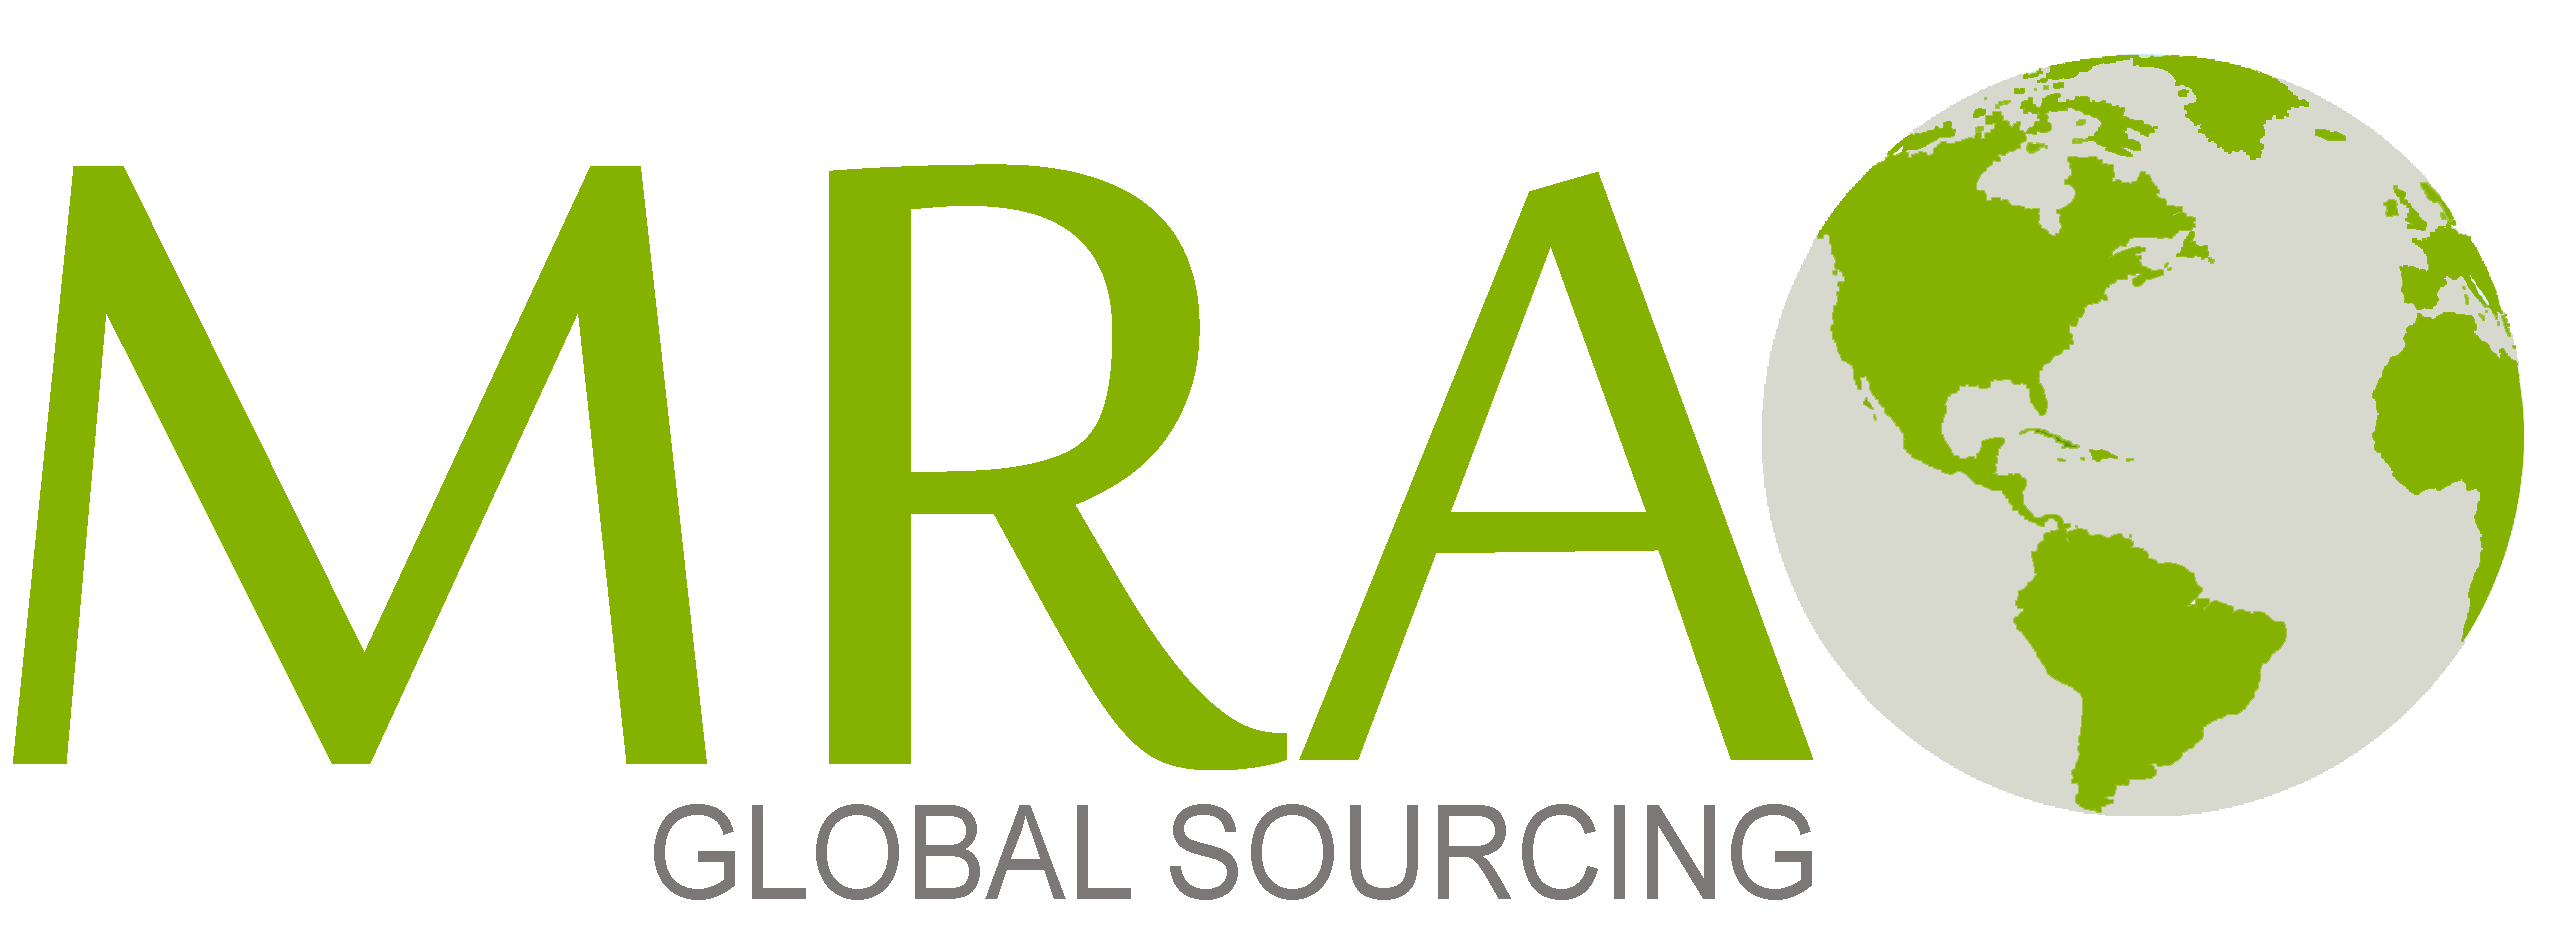 MRA Global Sourcing